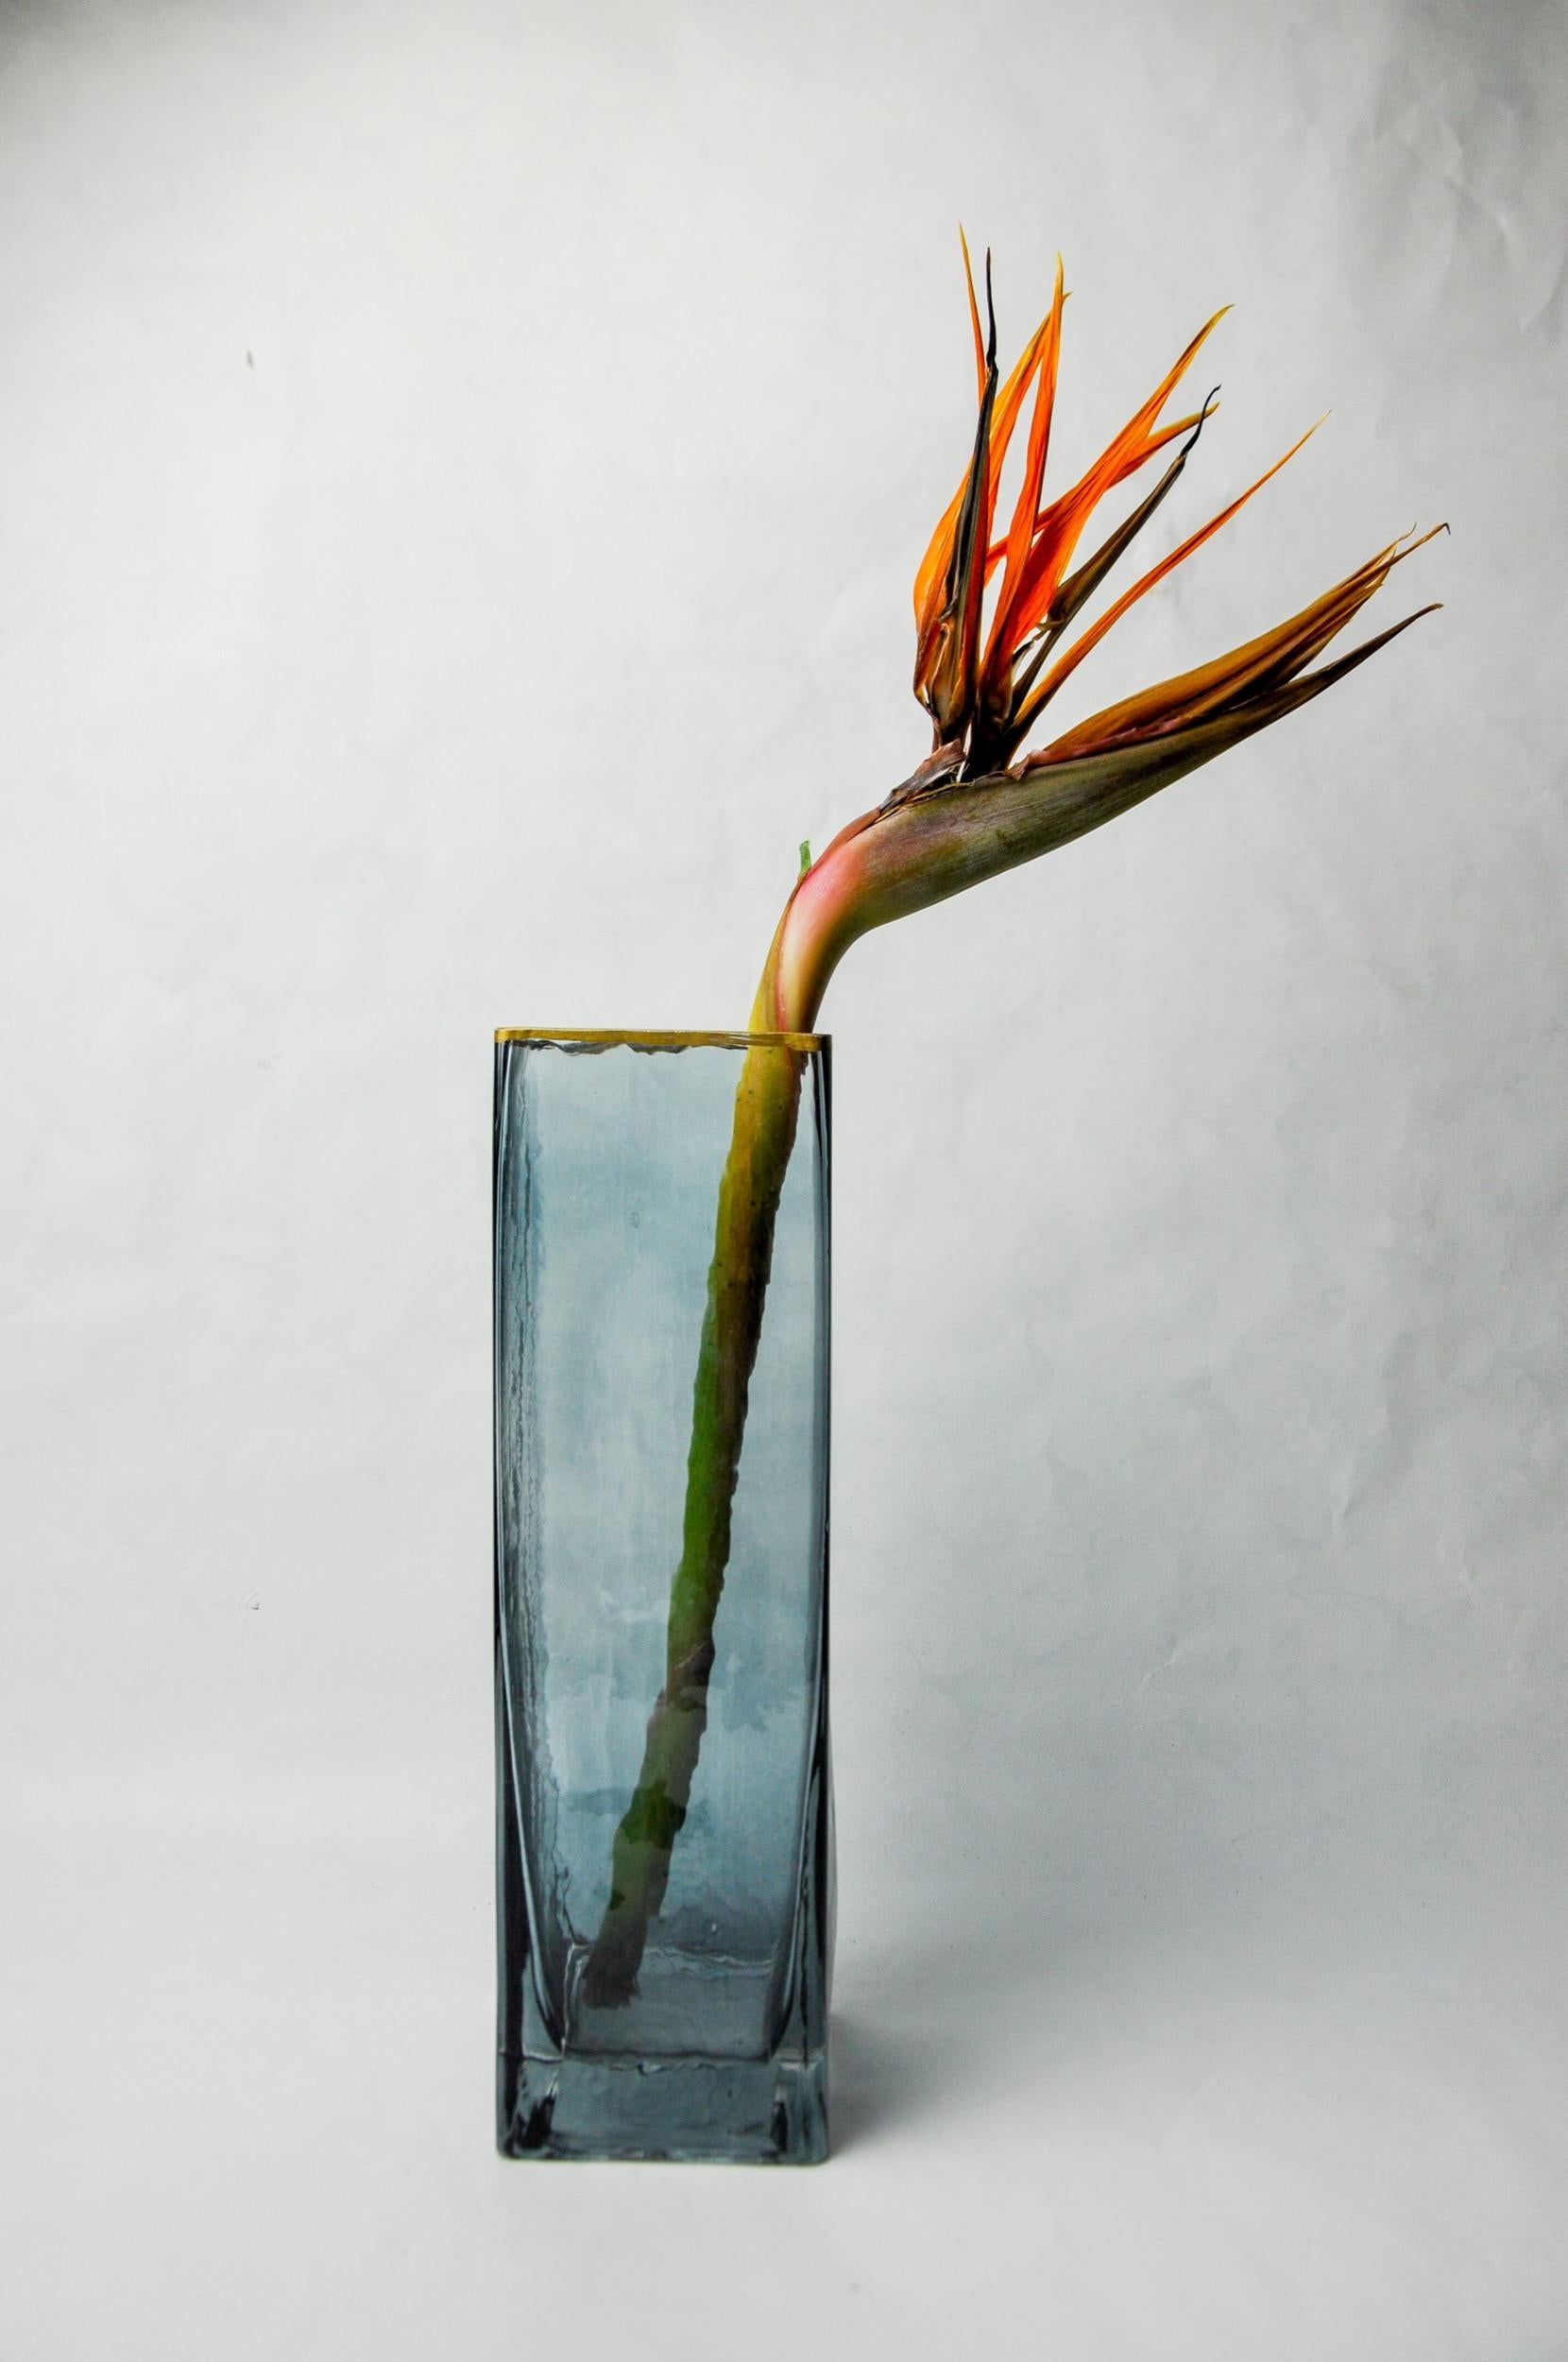 Hervorragende Vase, entworfen und hergestellt von petr hora in der Tschechischen Republik in den 1970er Jahren. Viereckige blaue Glasvase mit Goldrand, handgefertigt von einem tschechischen Künstler. Ein dekoratives Objekt, das Ihrem Interieur eine